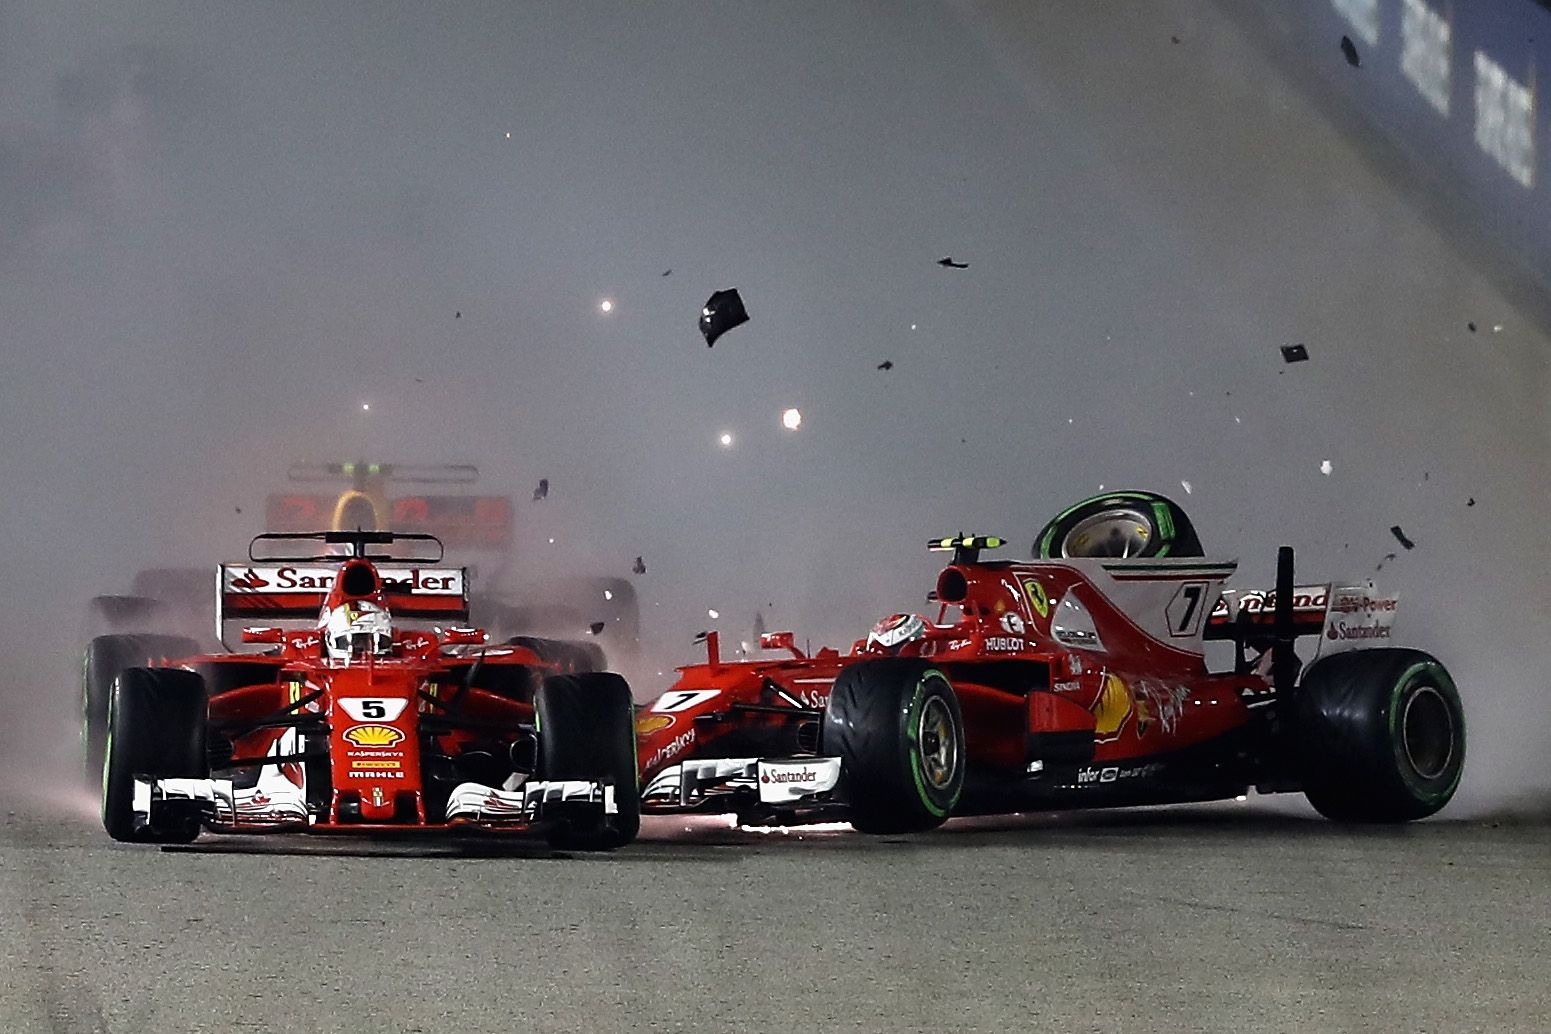 Vettel, Raikkonen, Verstappen crash in Singapore